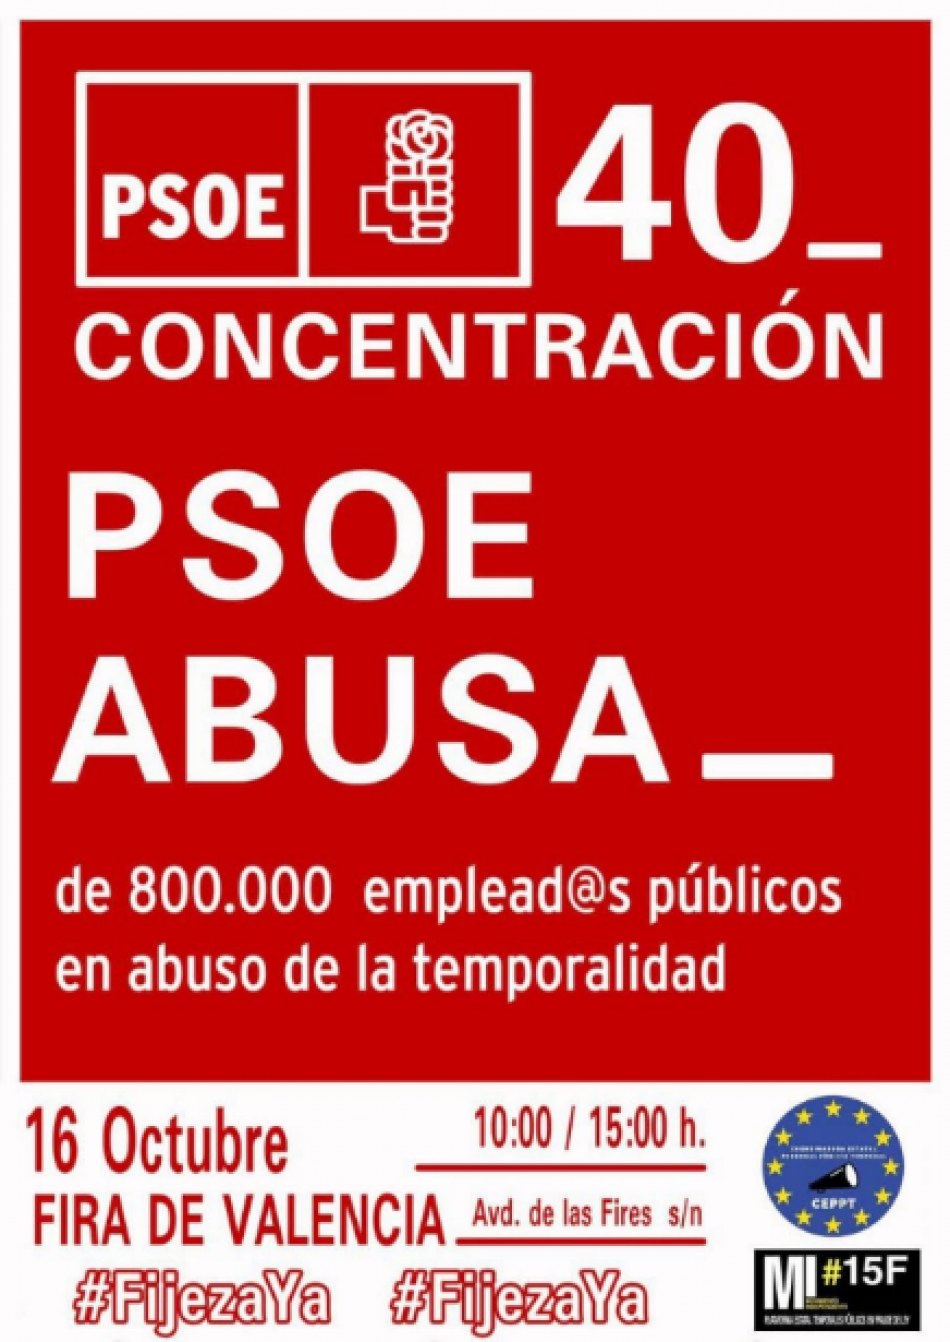 PSOE-abusa-de-800000-empleados-publicos-16-octubre-valencia